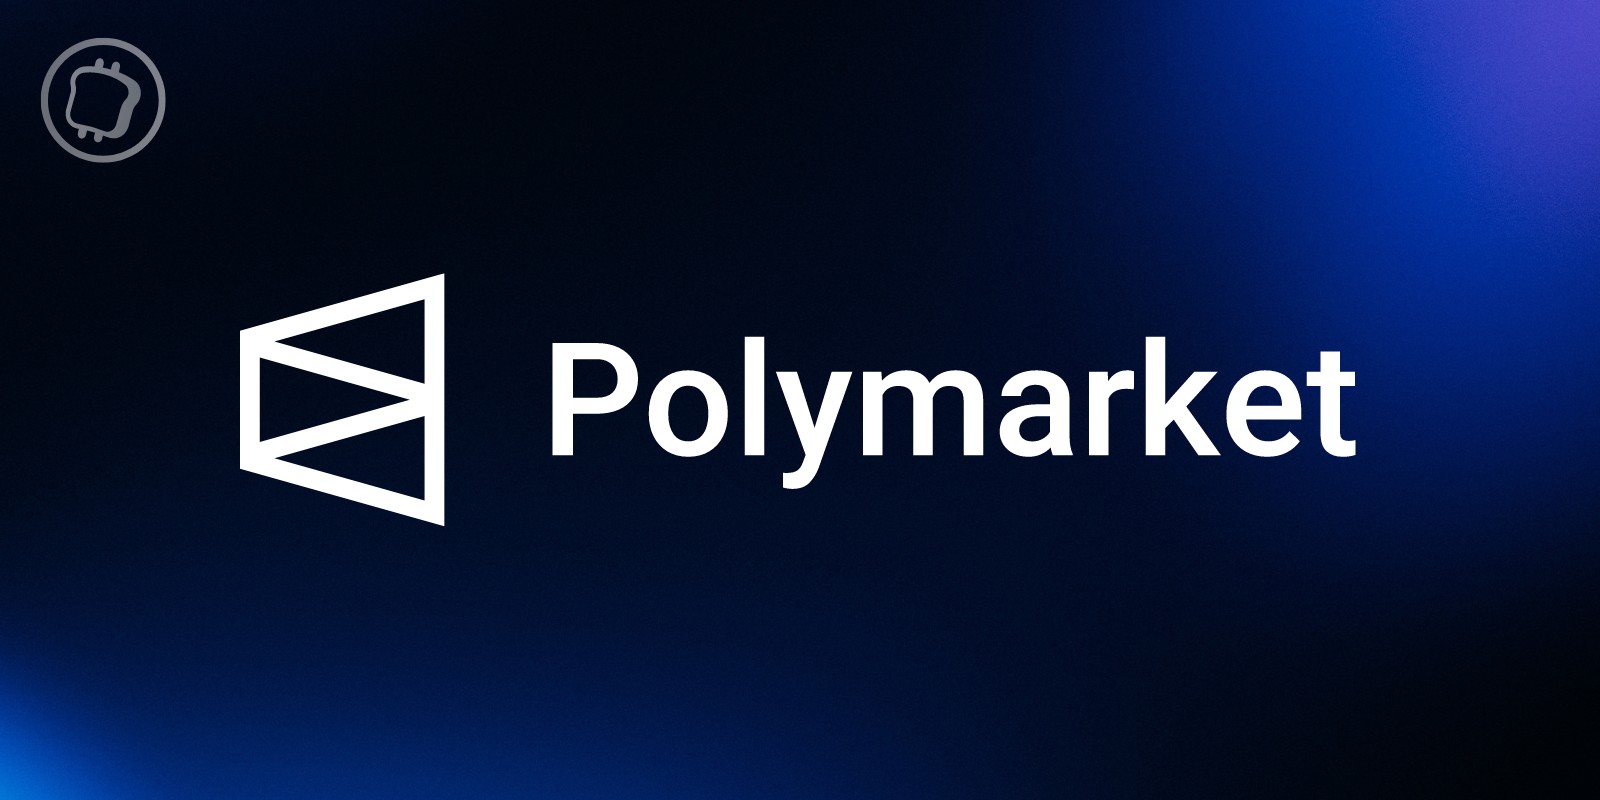 Le volume des transactions sur Polymarket bat un nouveau record en dépassant les 275 millions de dollars